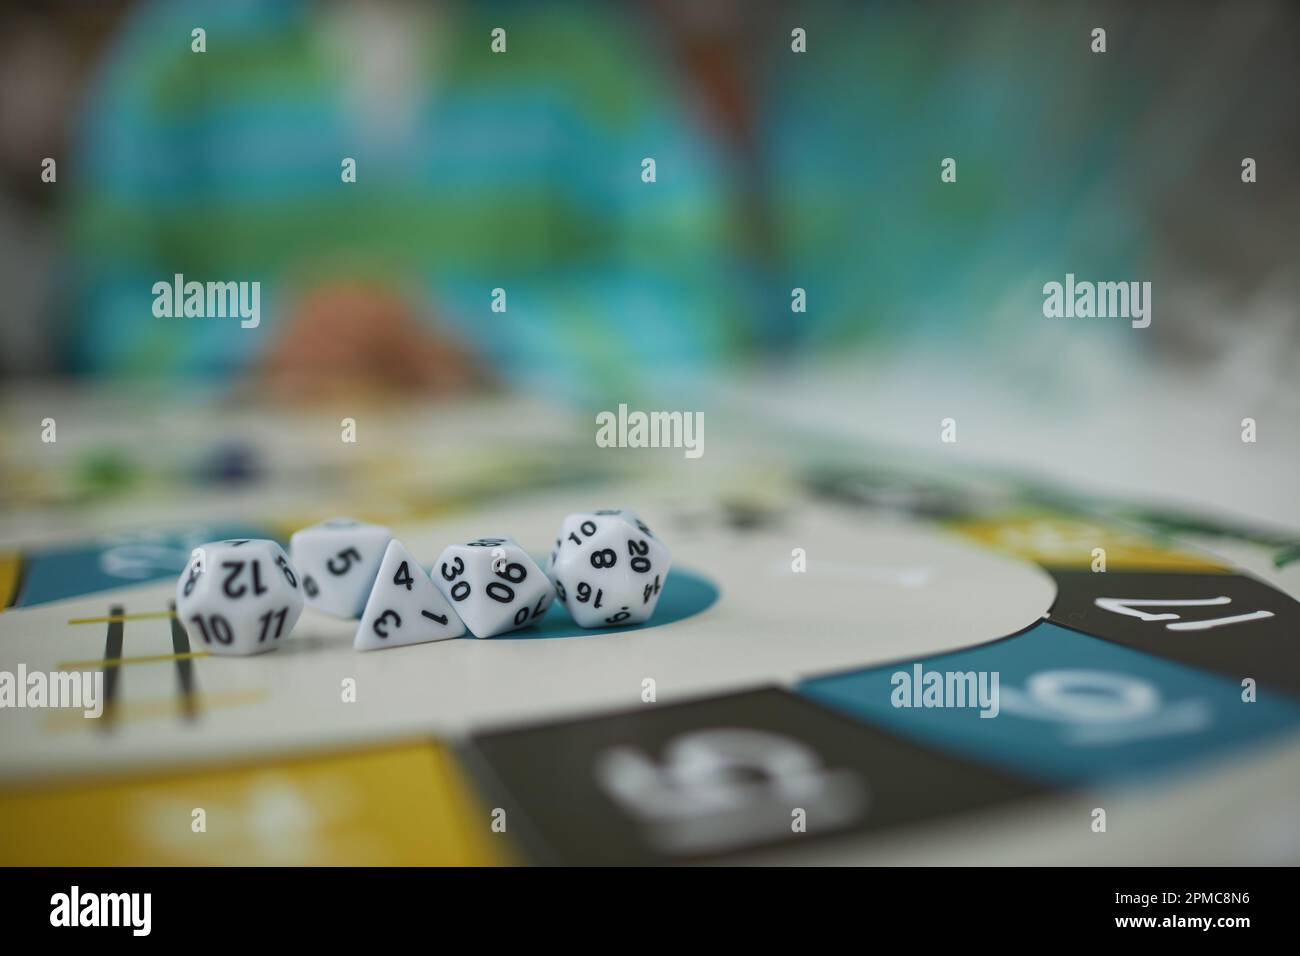 Immagine di sfondo del gioco da tavolo con macro closeup del set di dadi a più lati, copia spazio Foto Stock